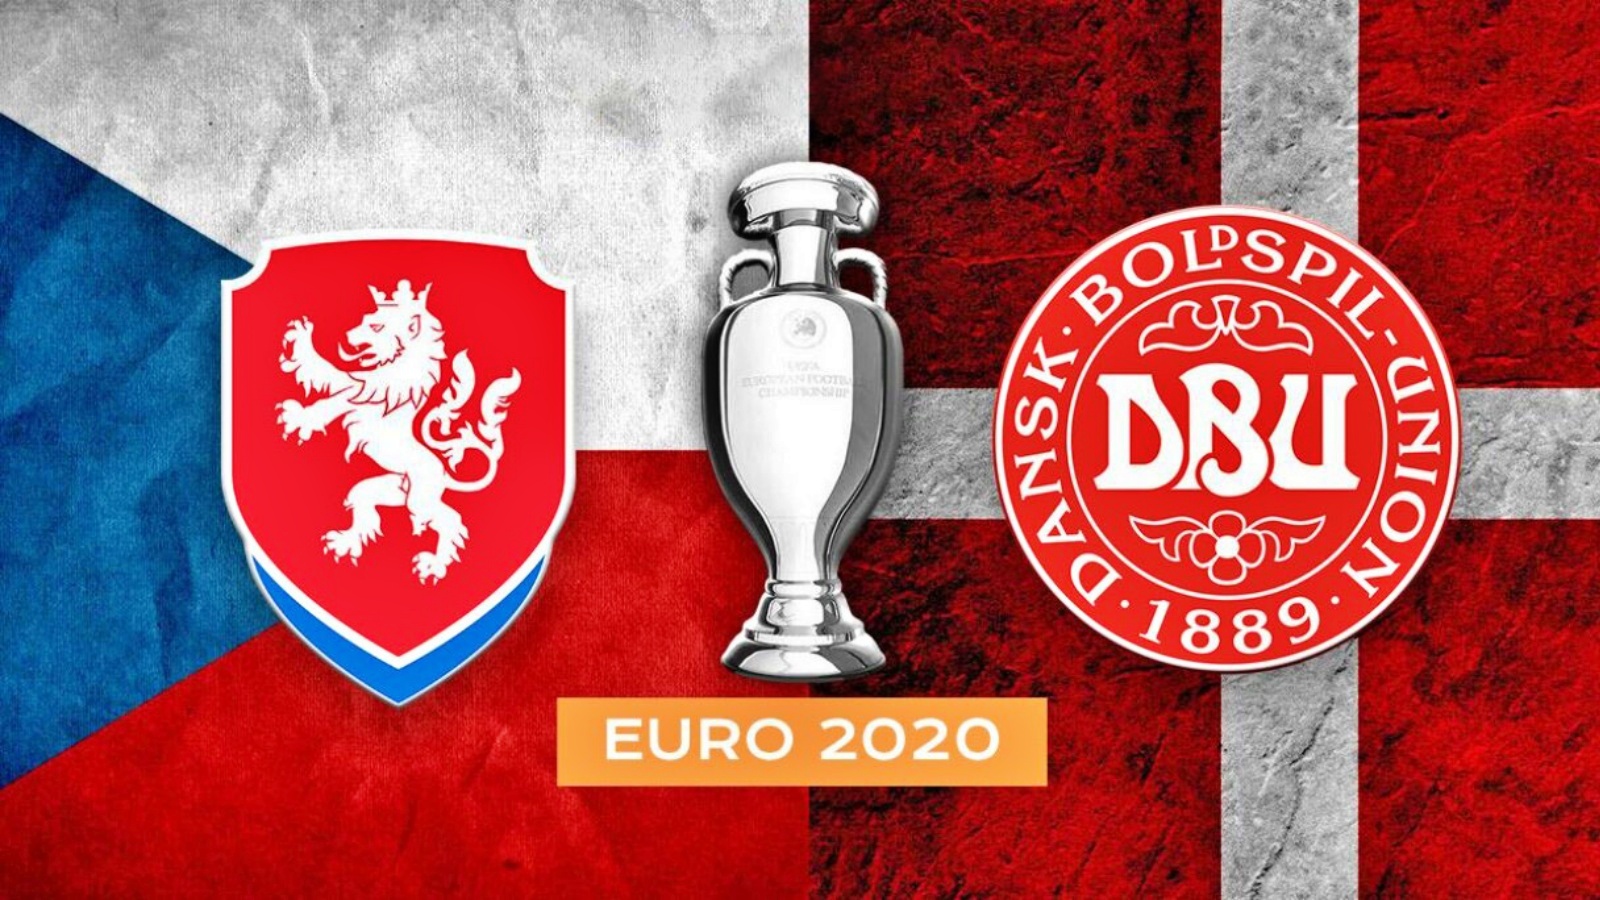 CEHIA - DANEMARCA LIVE PRO TV EURO 2020